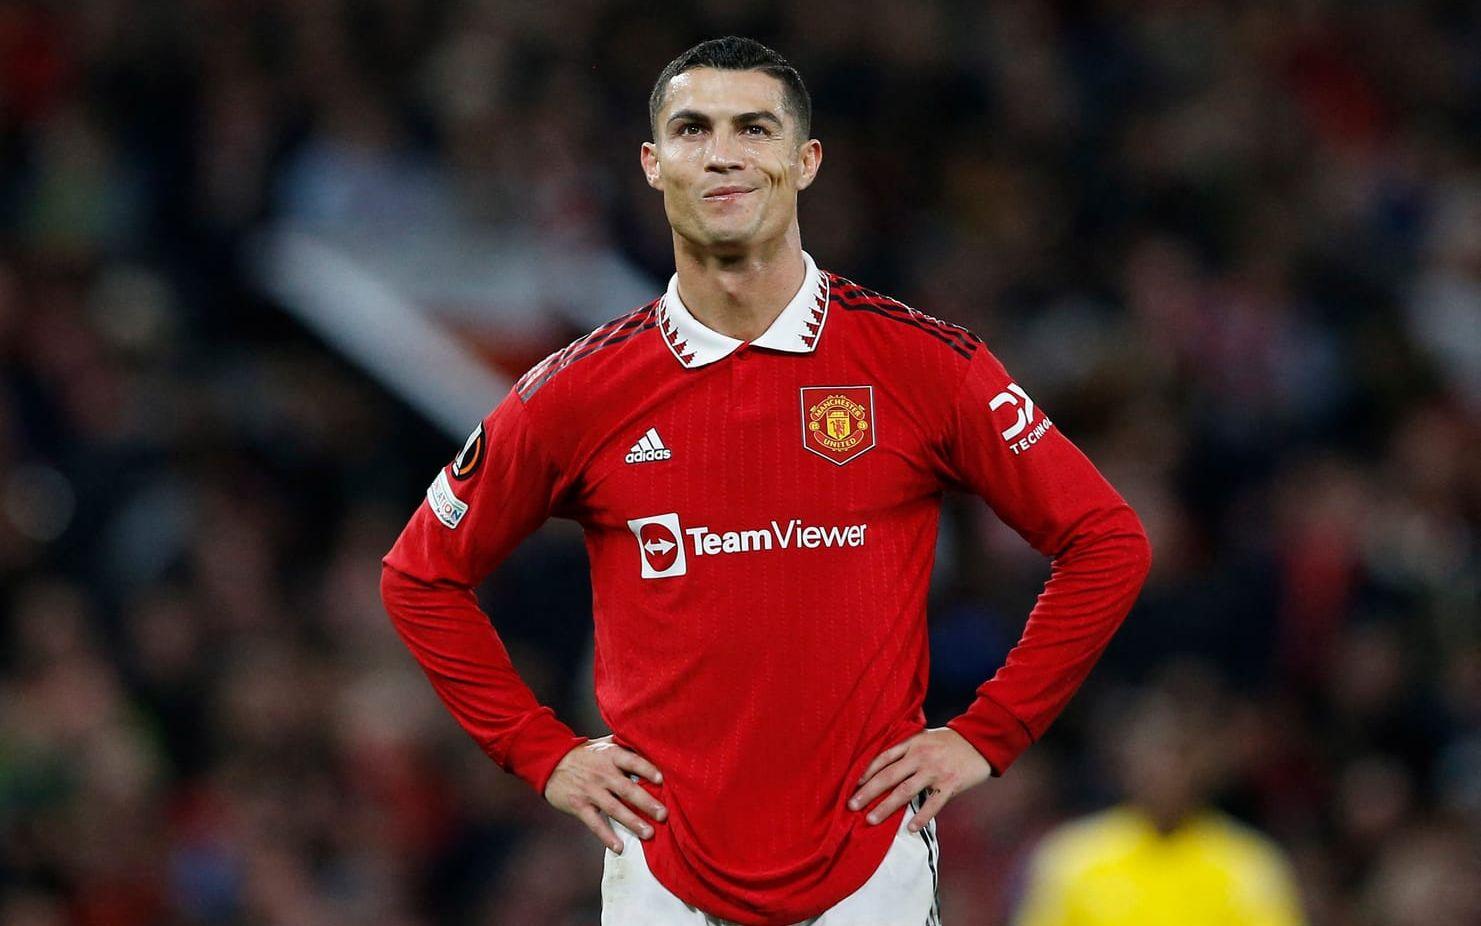 Ronaldo har under den senaste tiden ryktats till Al Nassr efter att ha lämnat Manchester United. Avtalet med den saudiska klubben ska enligt spanska Marca vara värt 2,1 miljarder svenska kronor per säsong.